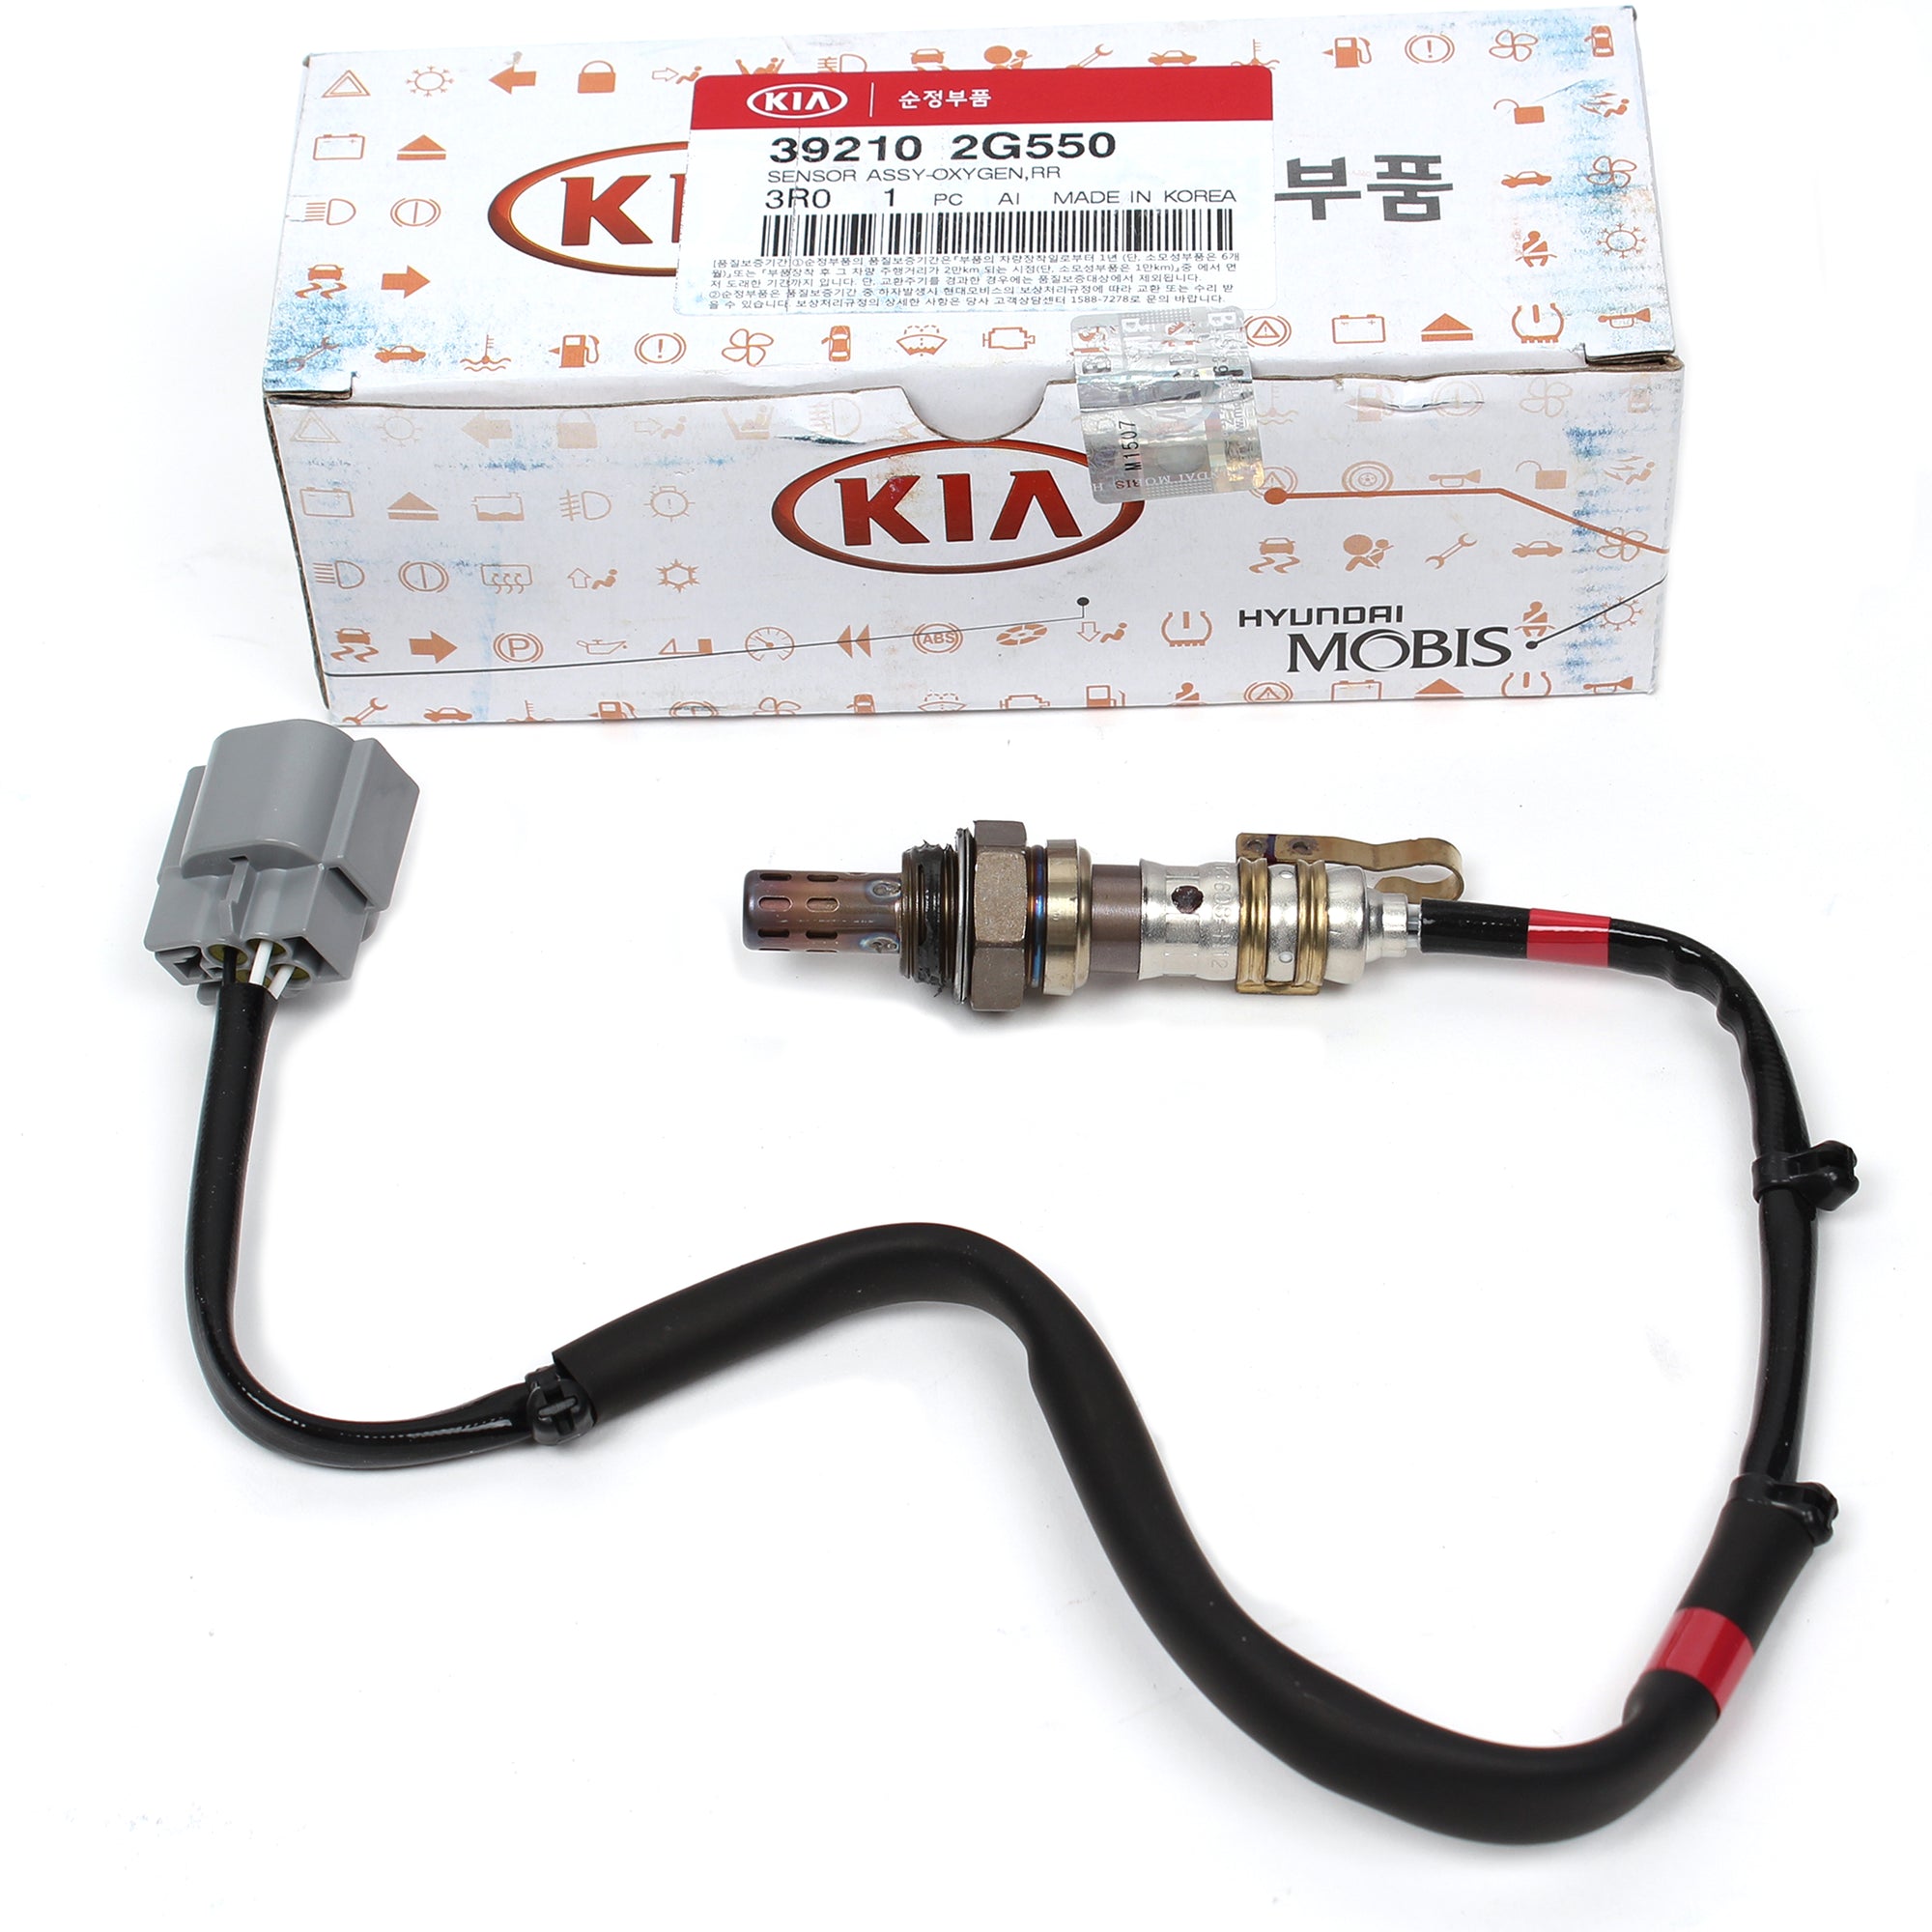 GENUINE Oxygen Sensor for 11-13 Hyundai Sonata Kia Optima 2.0L 2.4L 392102G550